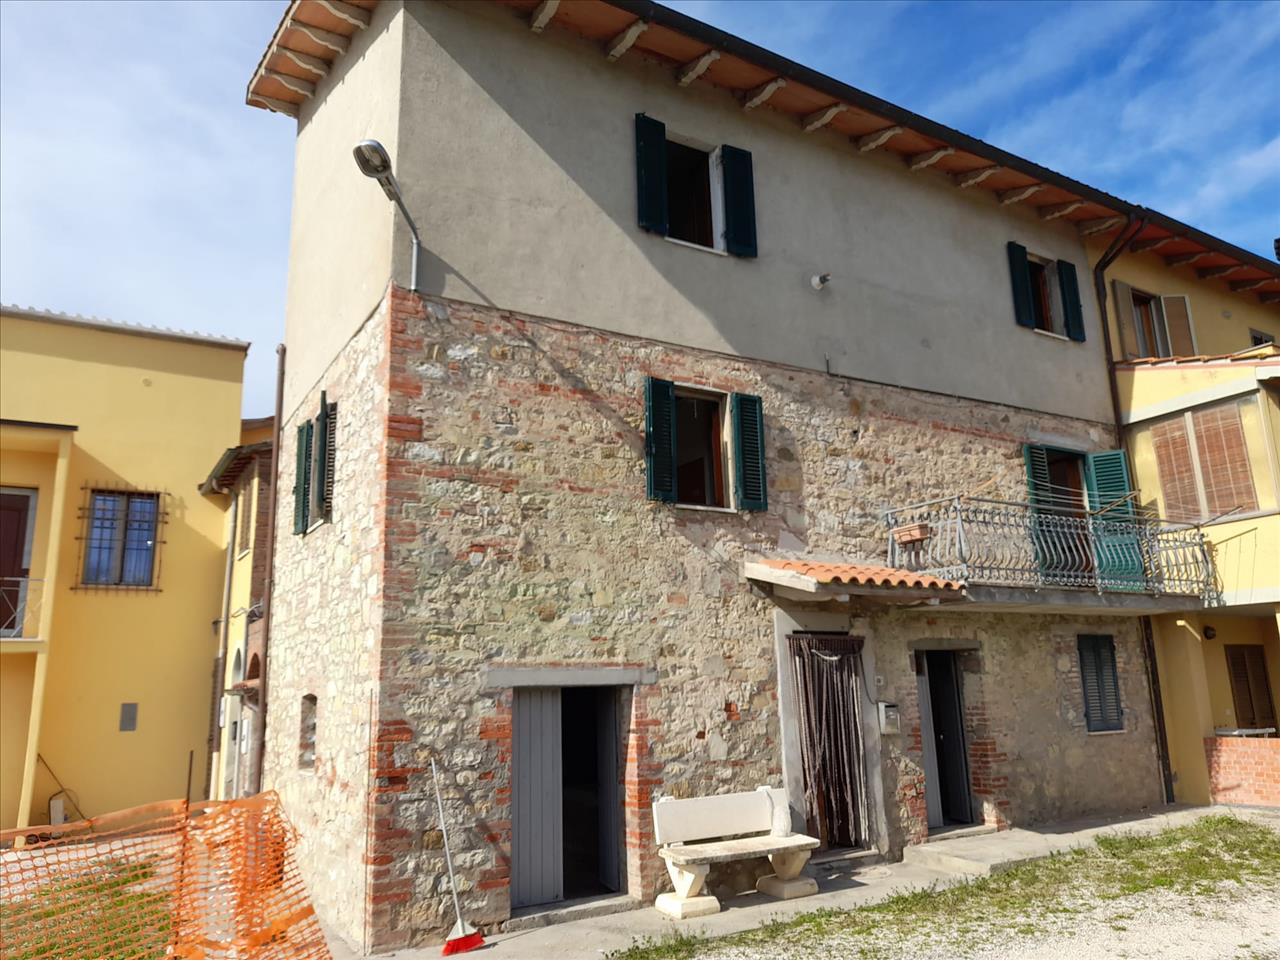 Villa Bifamiliare in vendita a Castiglione del Lago, 2 locali, prezzo € 85.000 | PortaleAgenzieImmobiliari.it